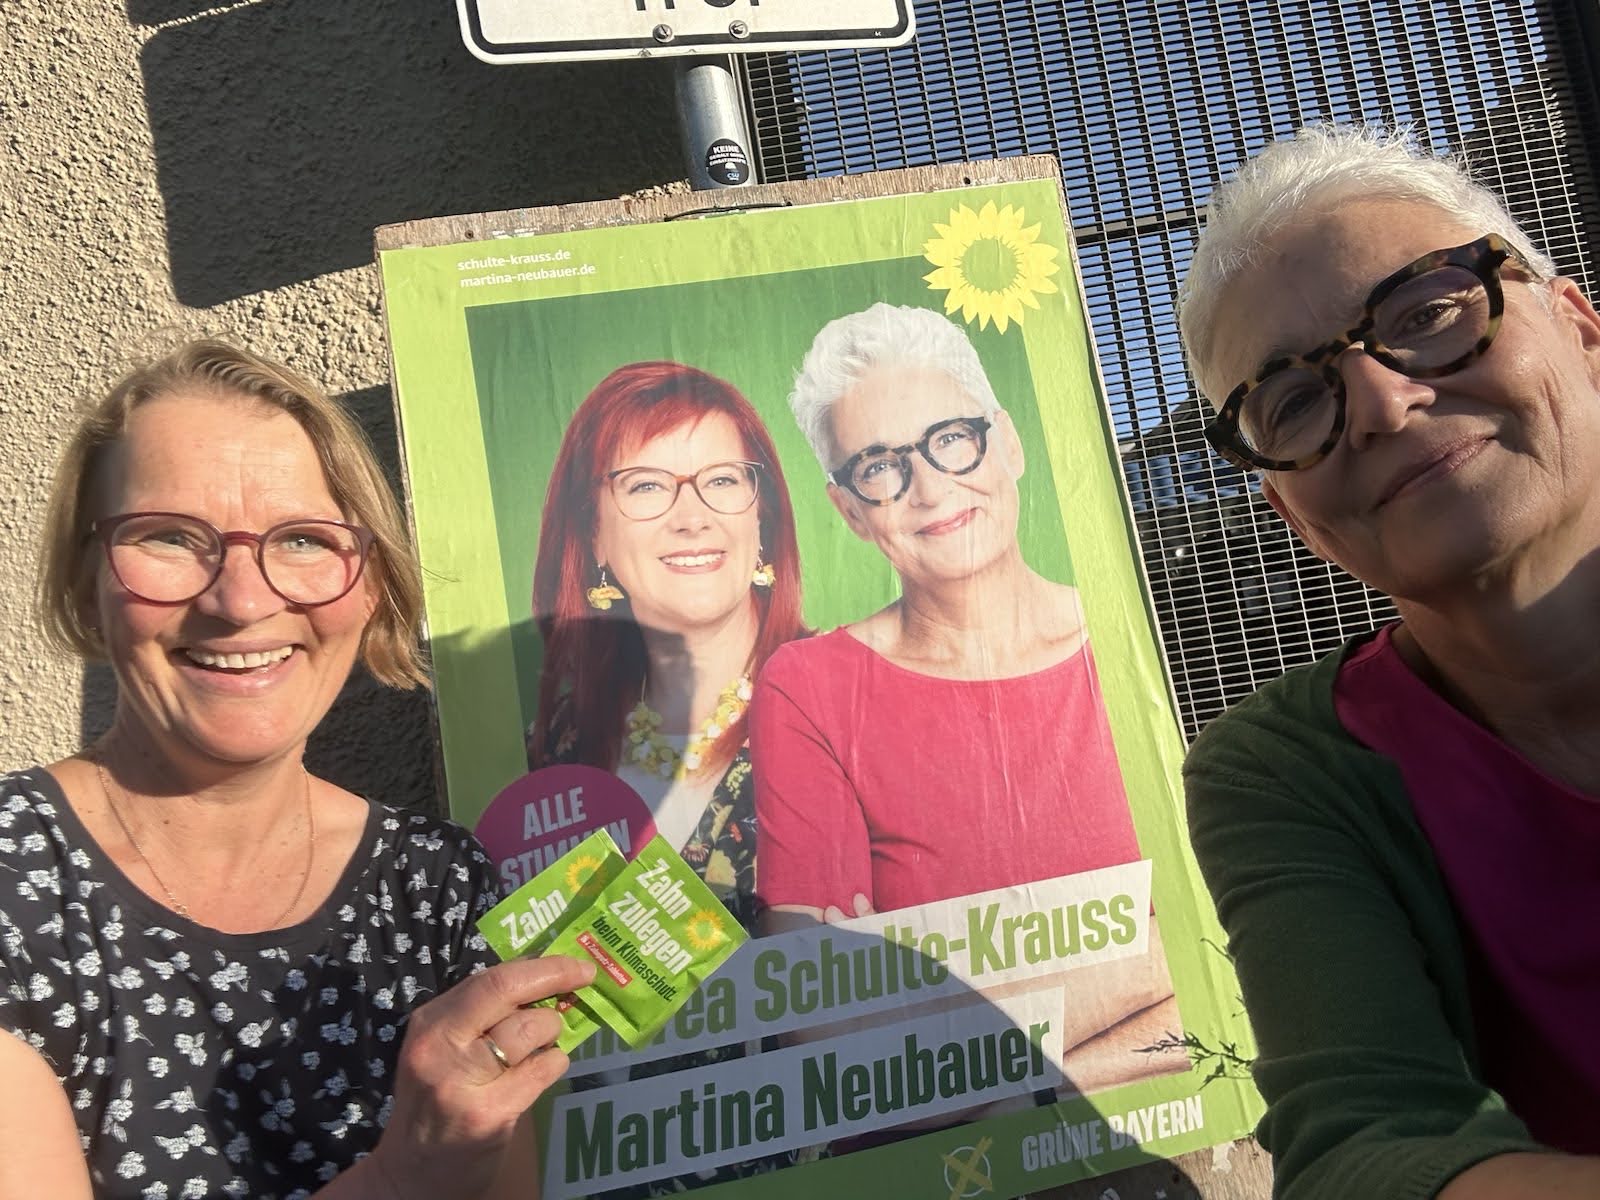 Anja Kiemle und Martina Neubauer bei "Grün klingelt"